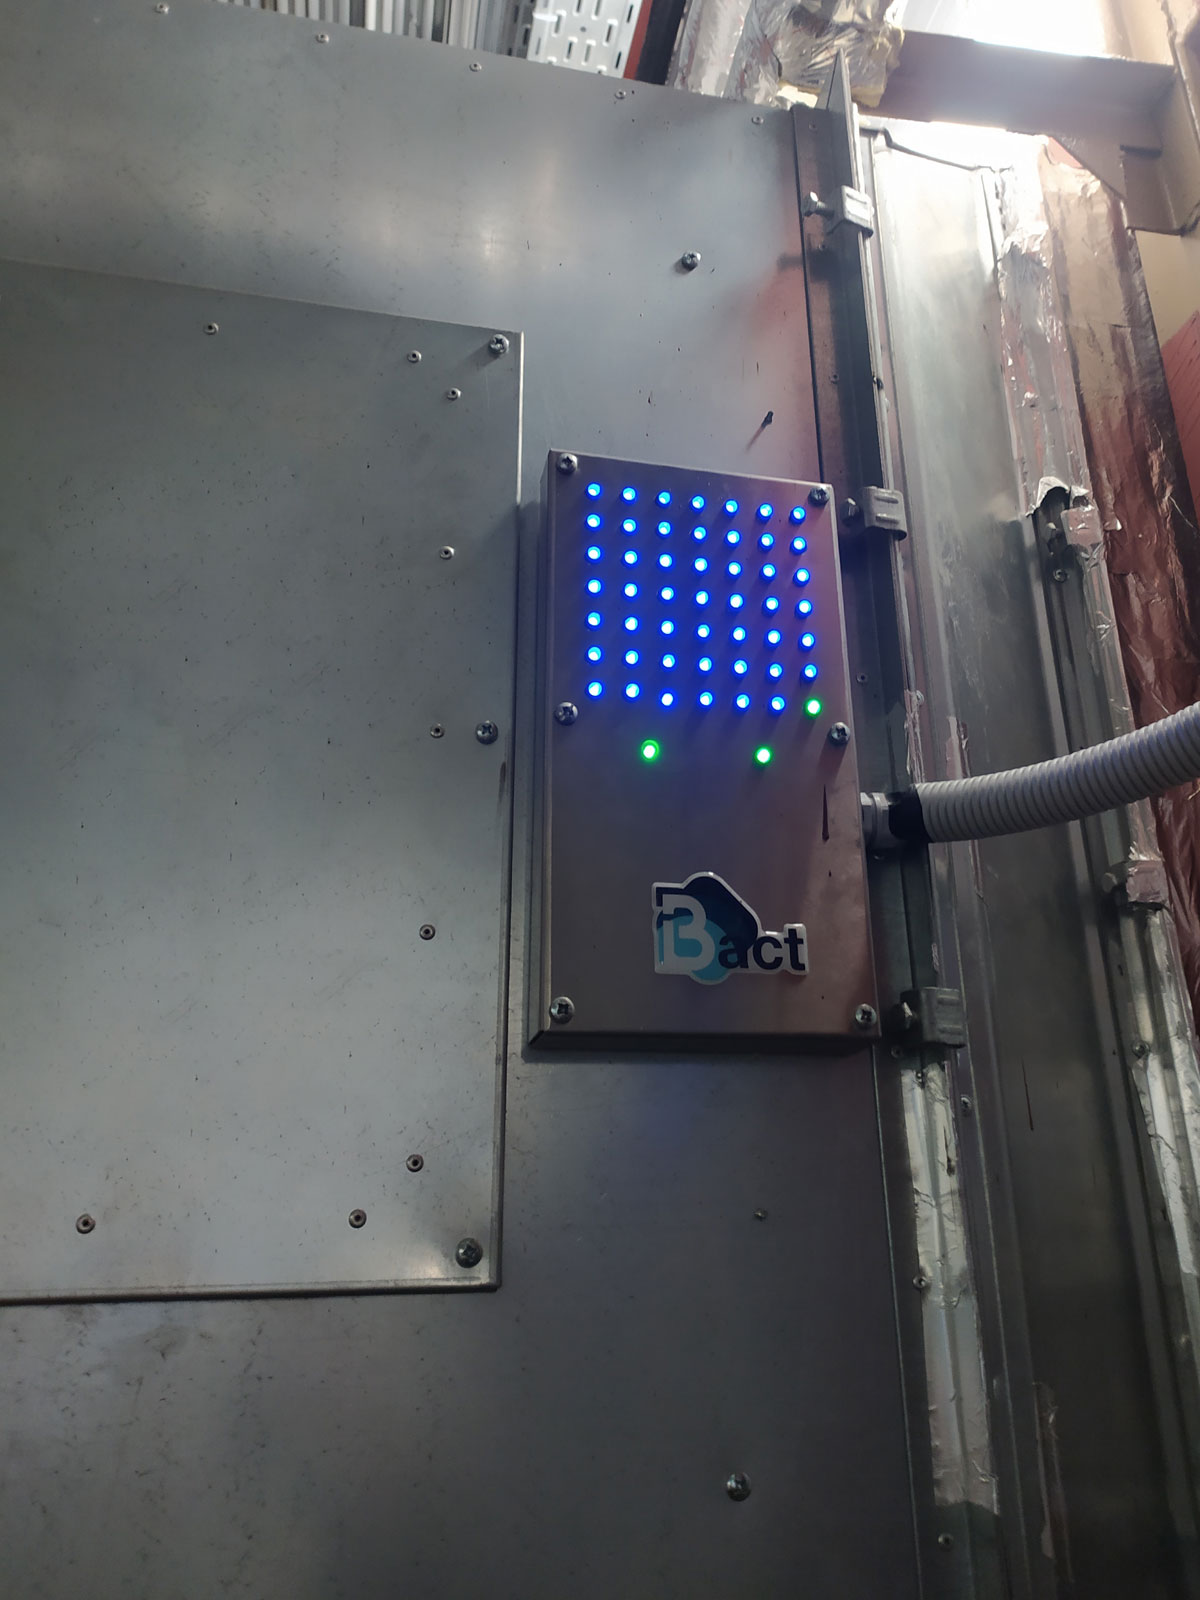 Фото индикации работы бактерицидных ламп на пульте управления бактерицидной секции MegaBakt MB 4800